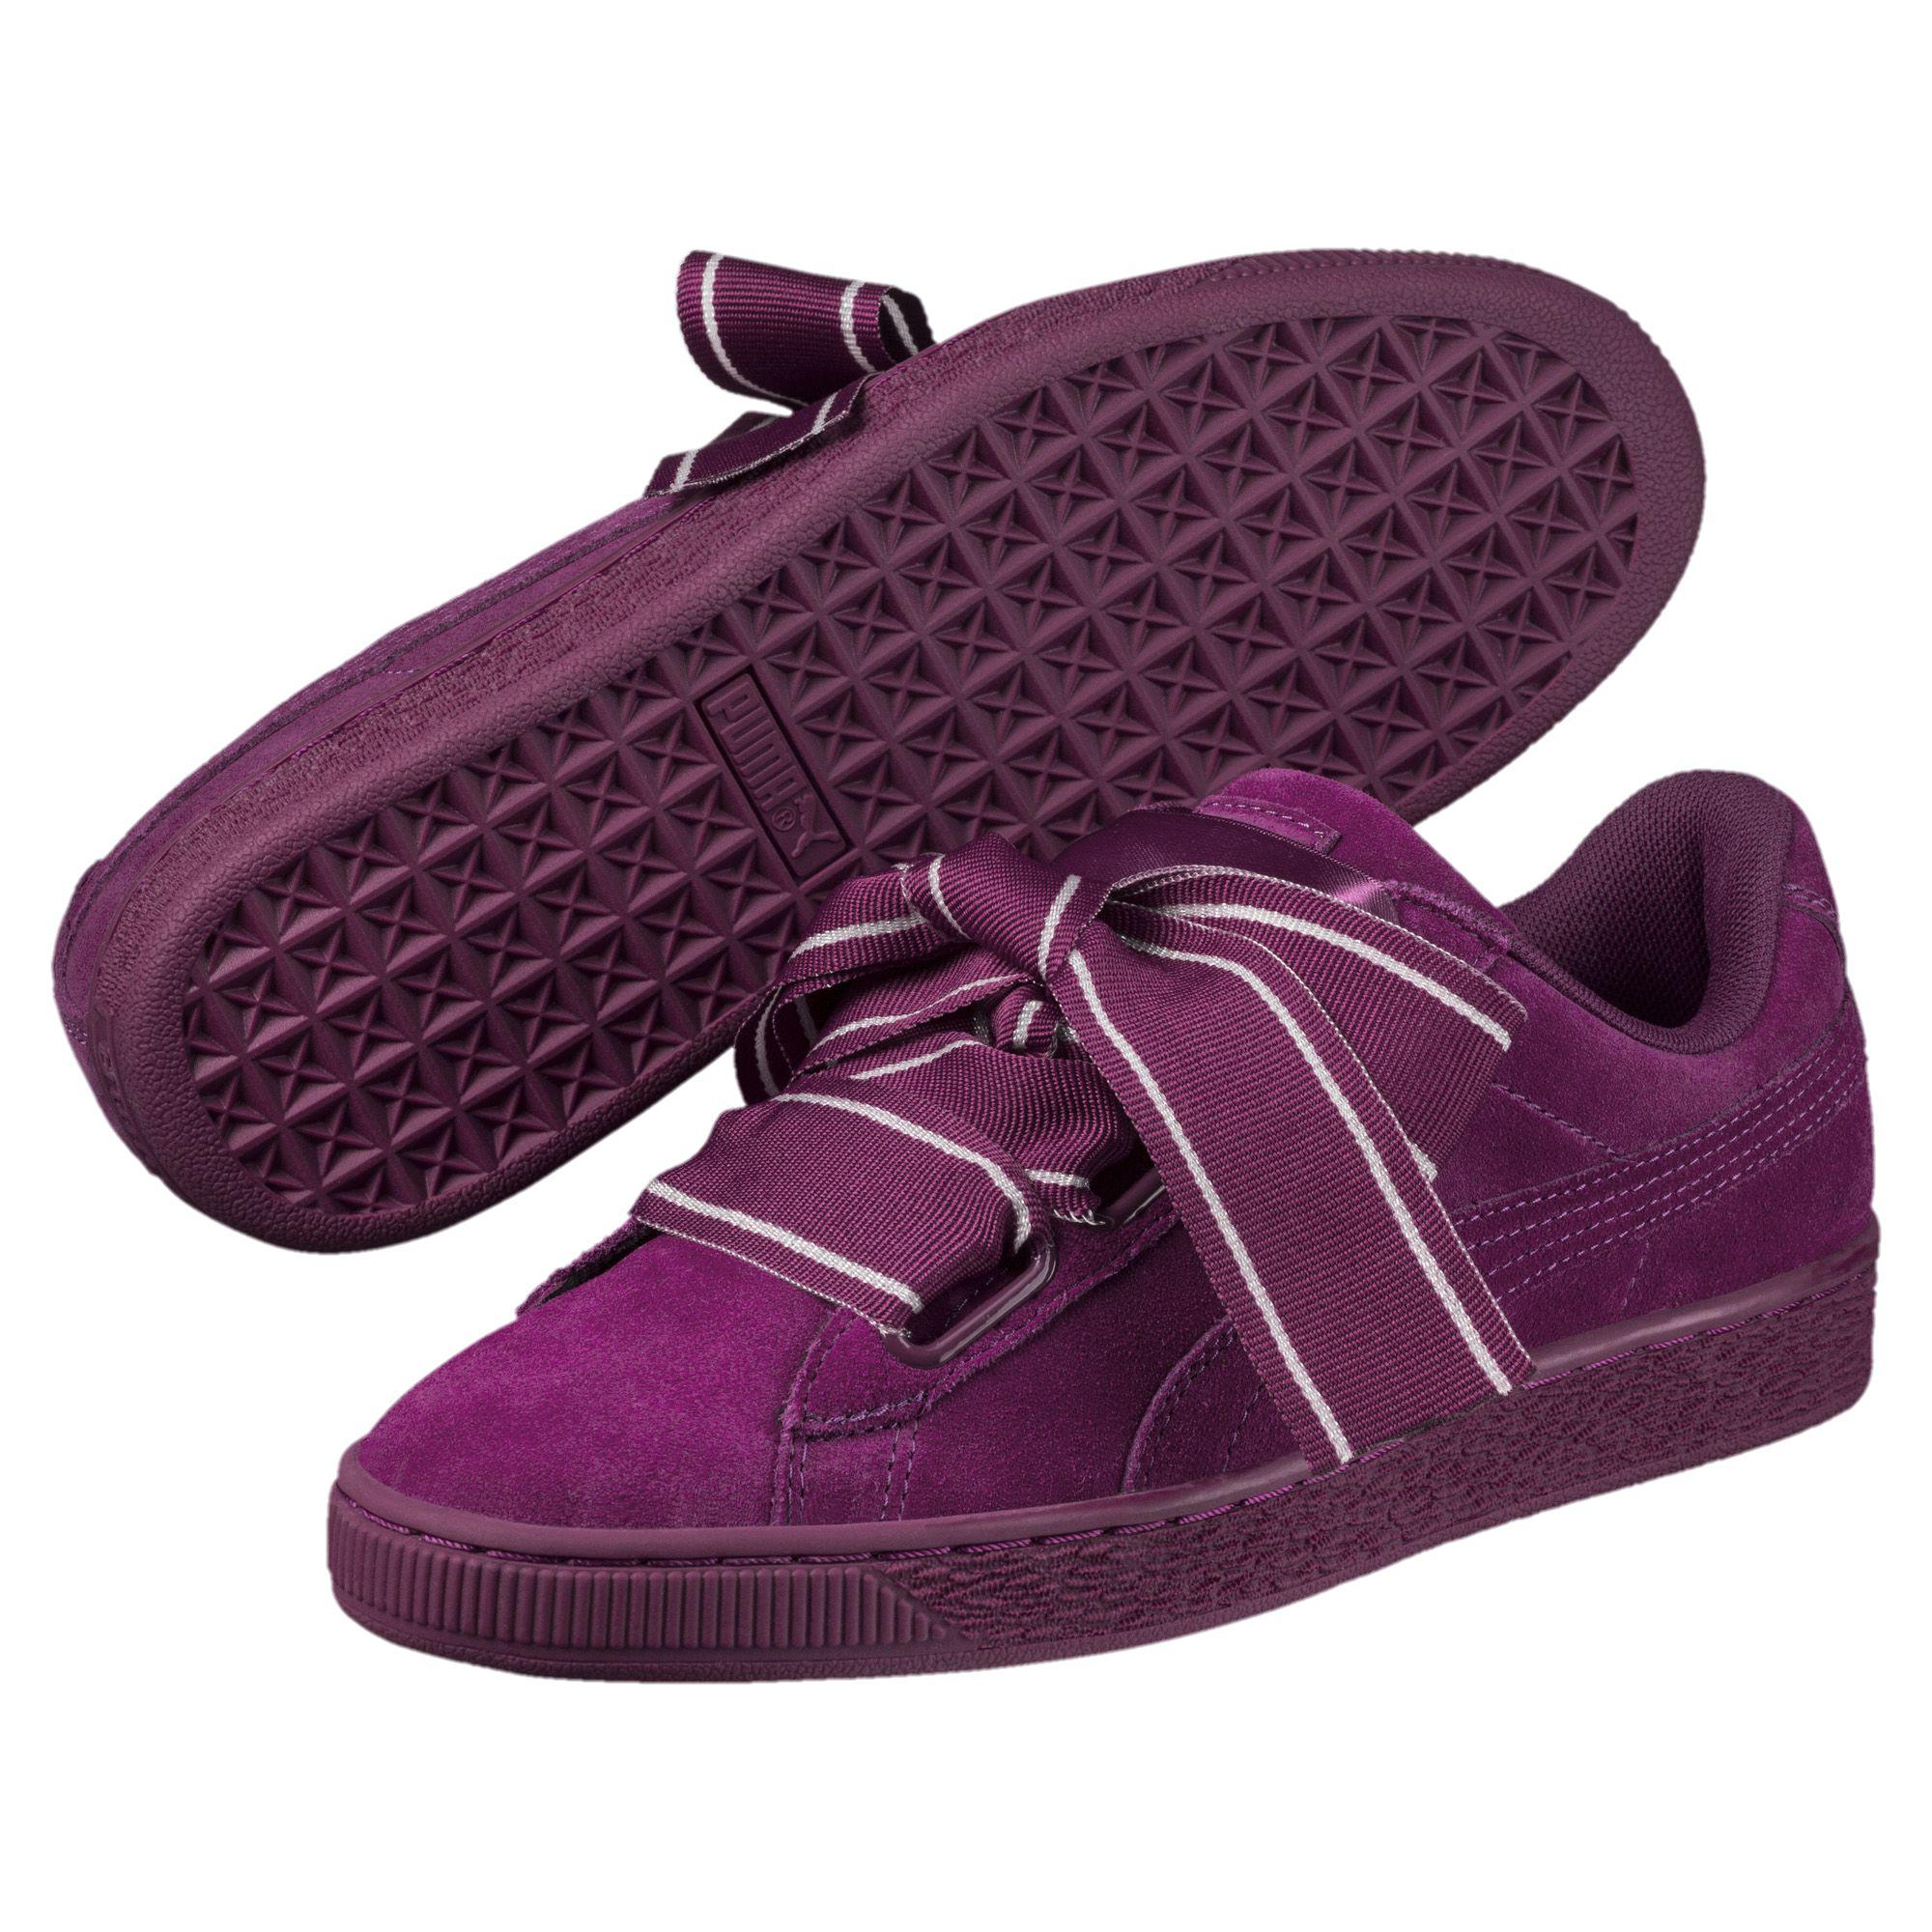 PUMA Suede Heart Satin Ii Women's Sneakers in Dark Purple-Dark Purple  (Purple) - Lyst